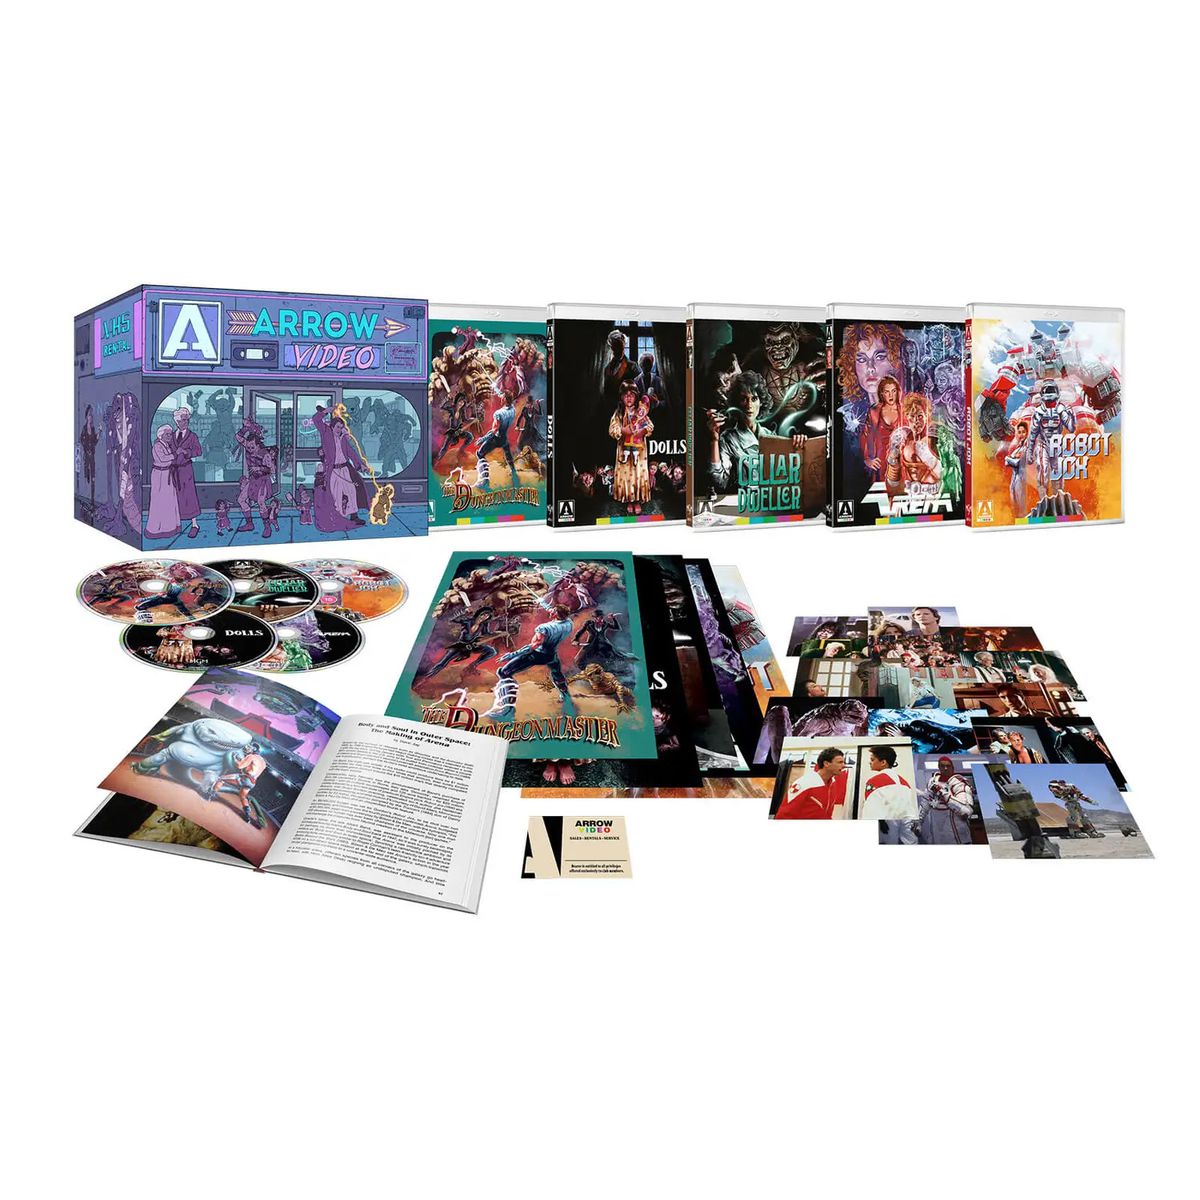 Ett foto av Enter the Video Store Blu-ray-boxen, inklusive ett gäng Blu-ray-skivor, foton och en bok.